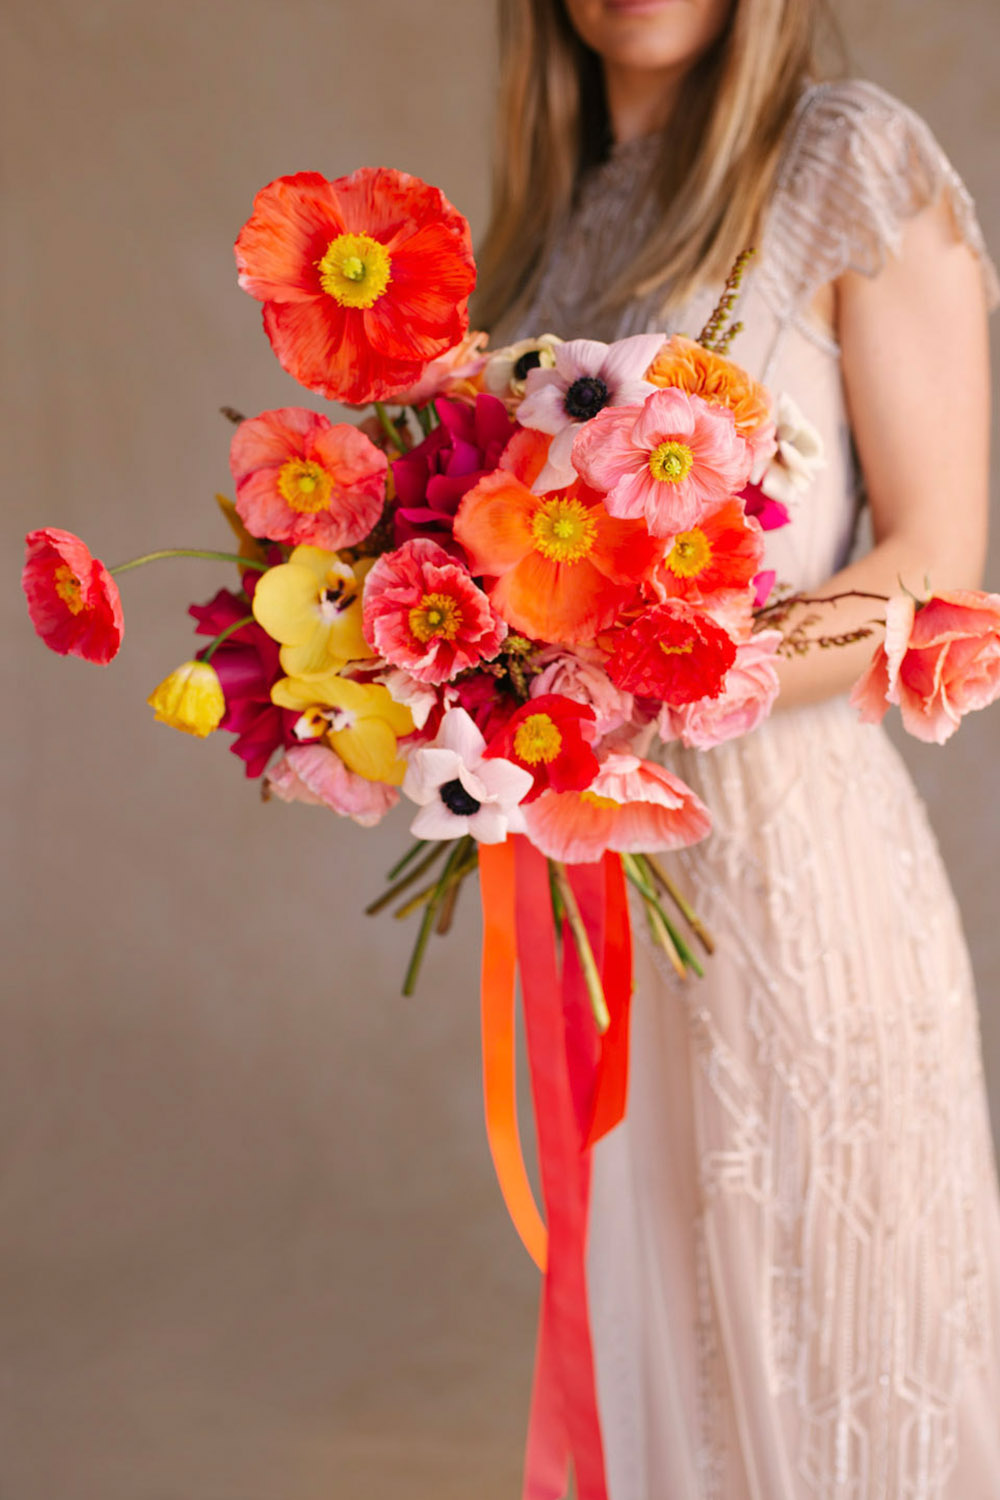 Winter Wedding Bouquet Inspiration